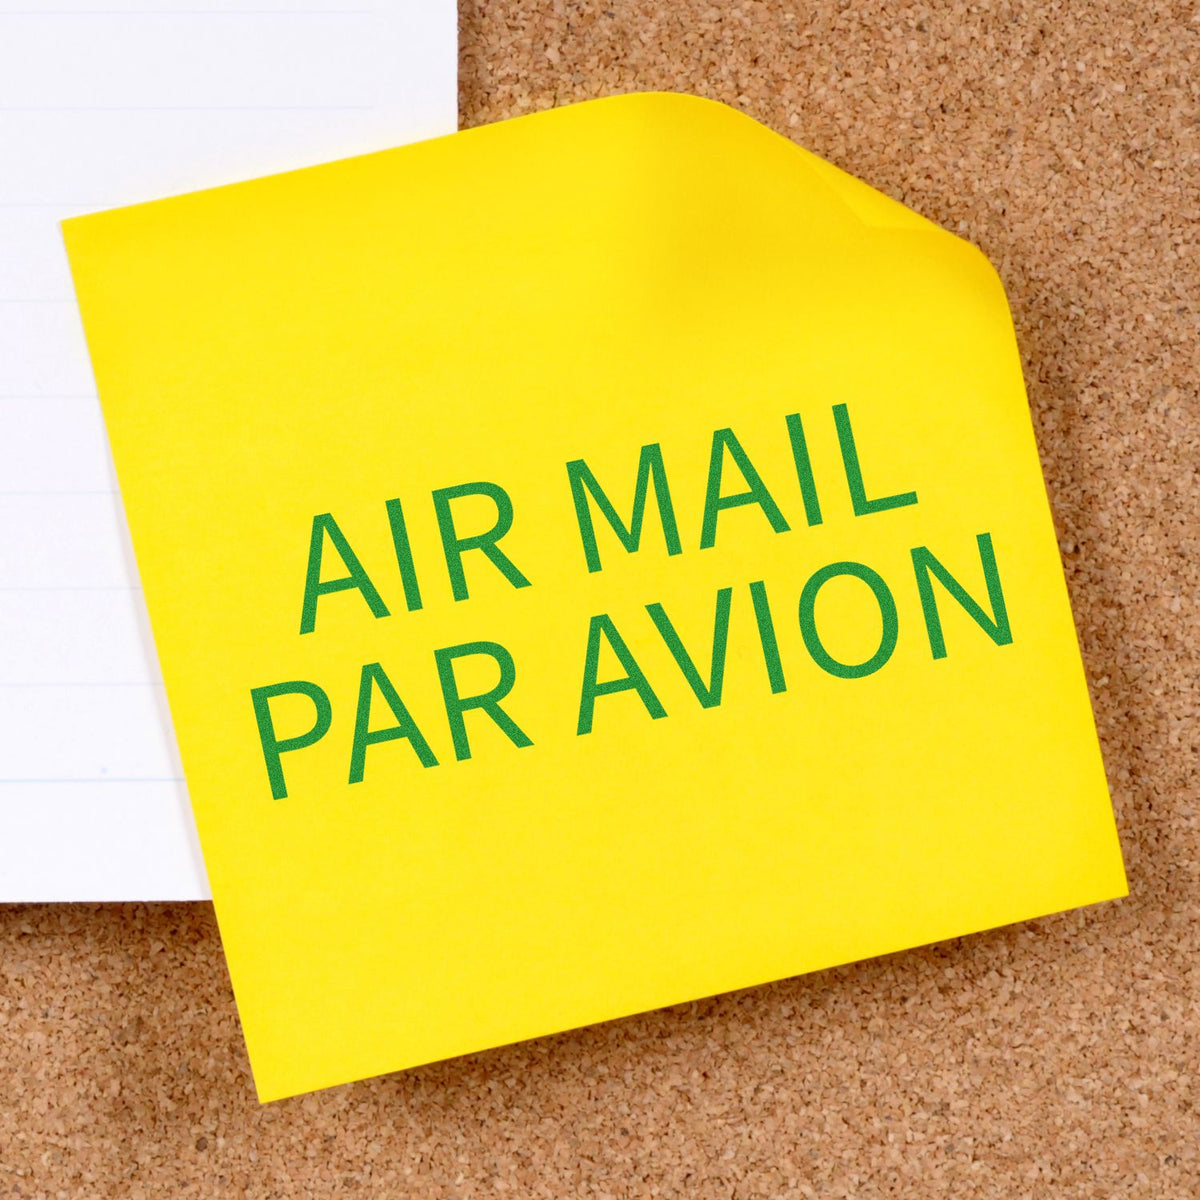 Slim Pre-Inked Air Mail Par Avion Stamp In Use